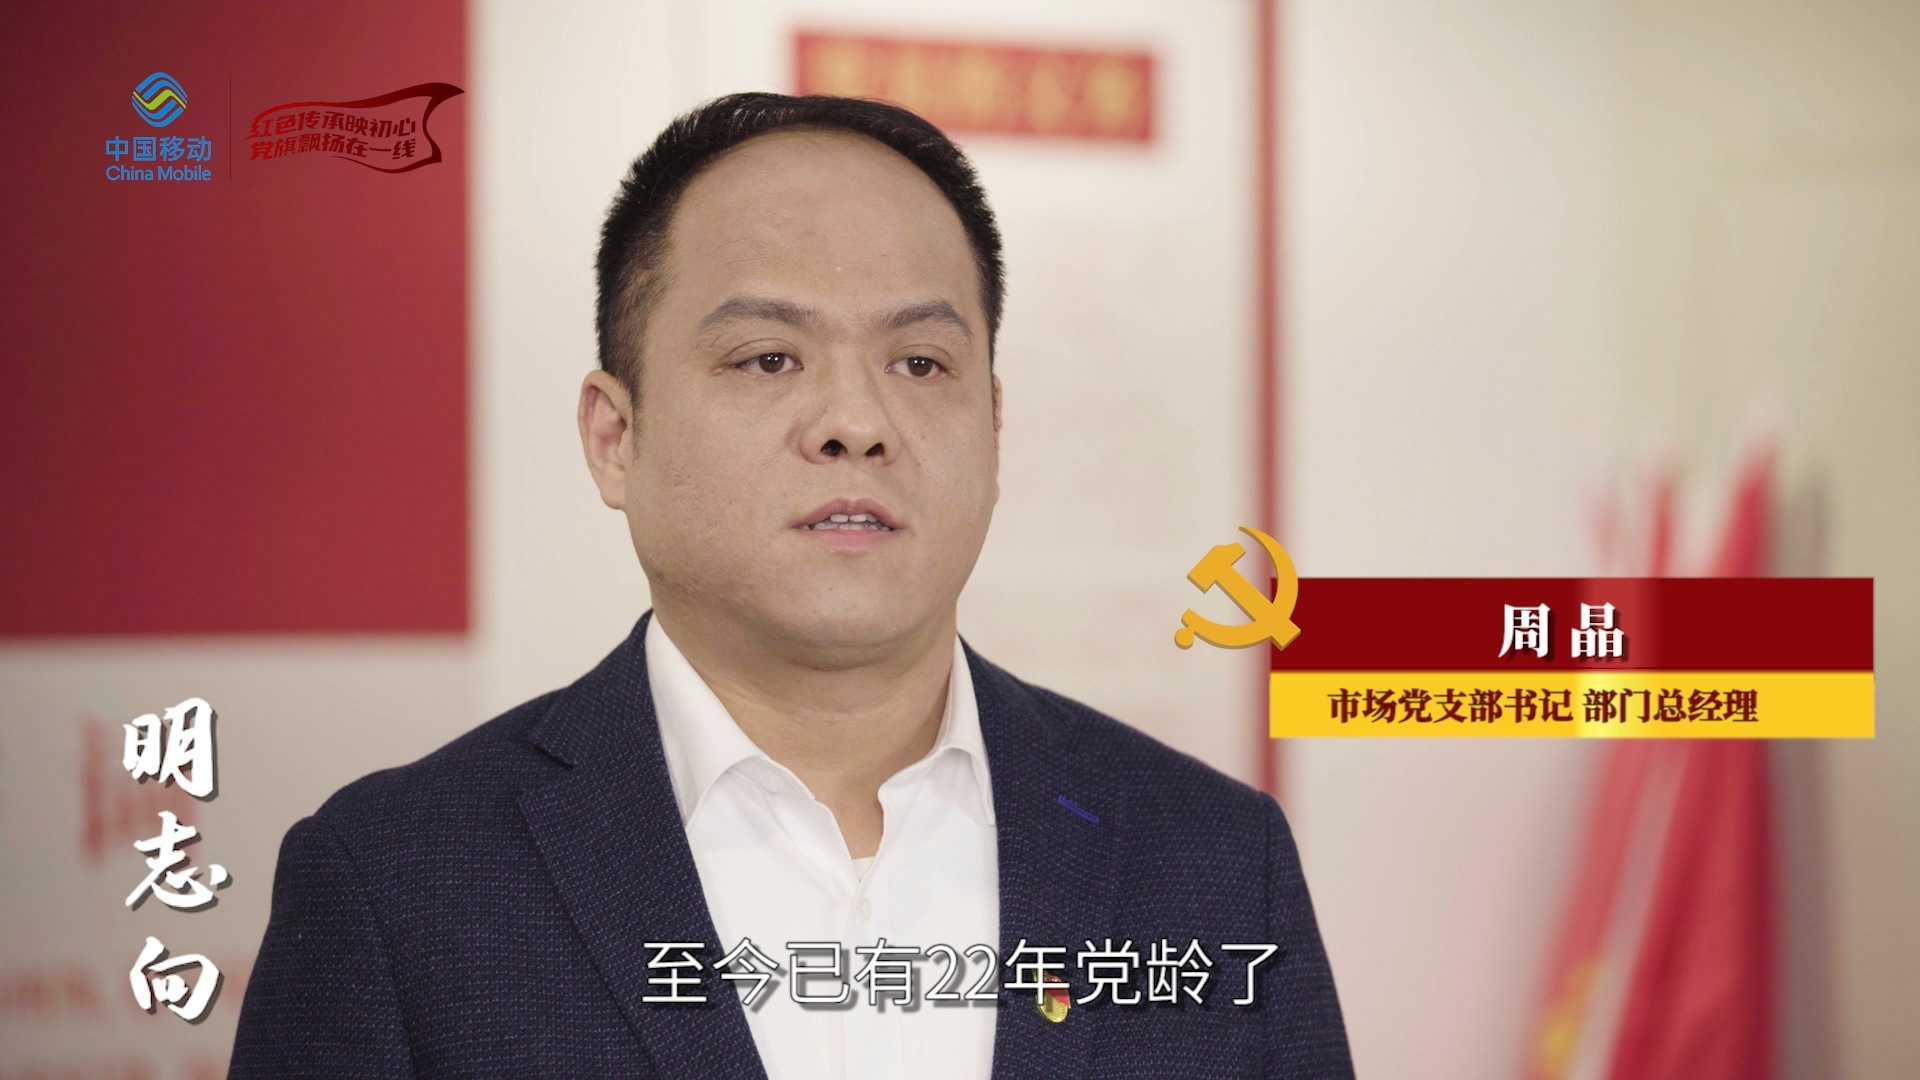 中国移动党政宣传片